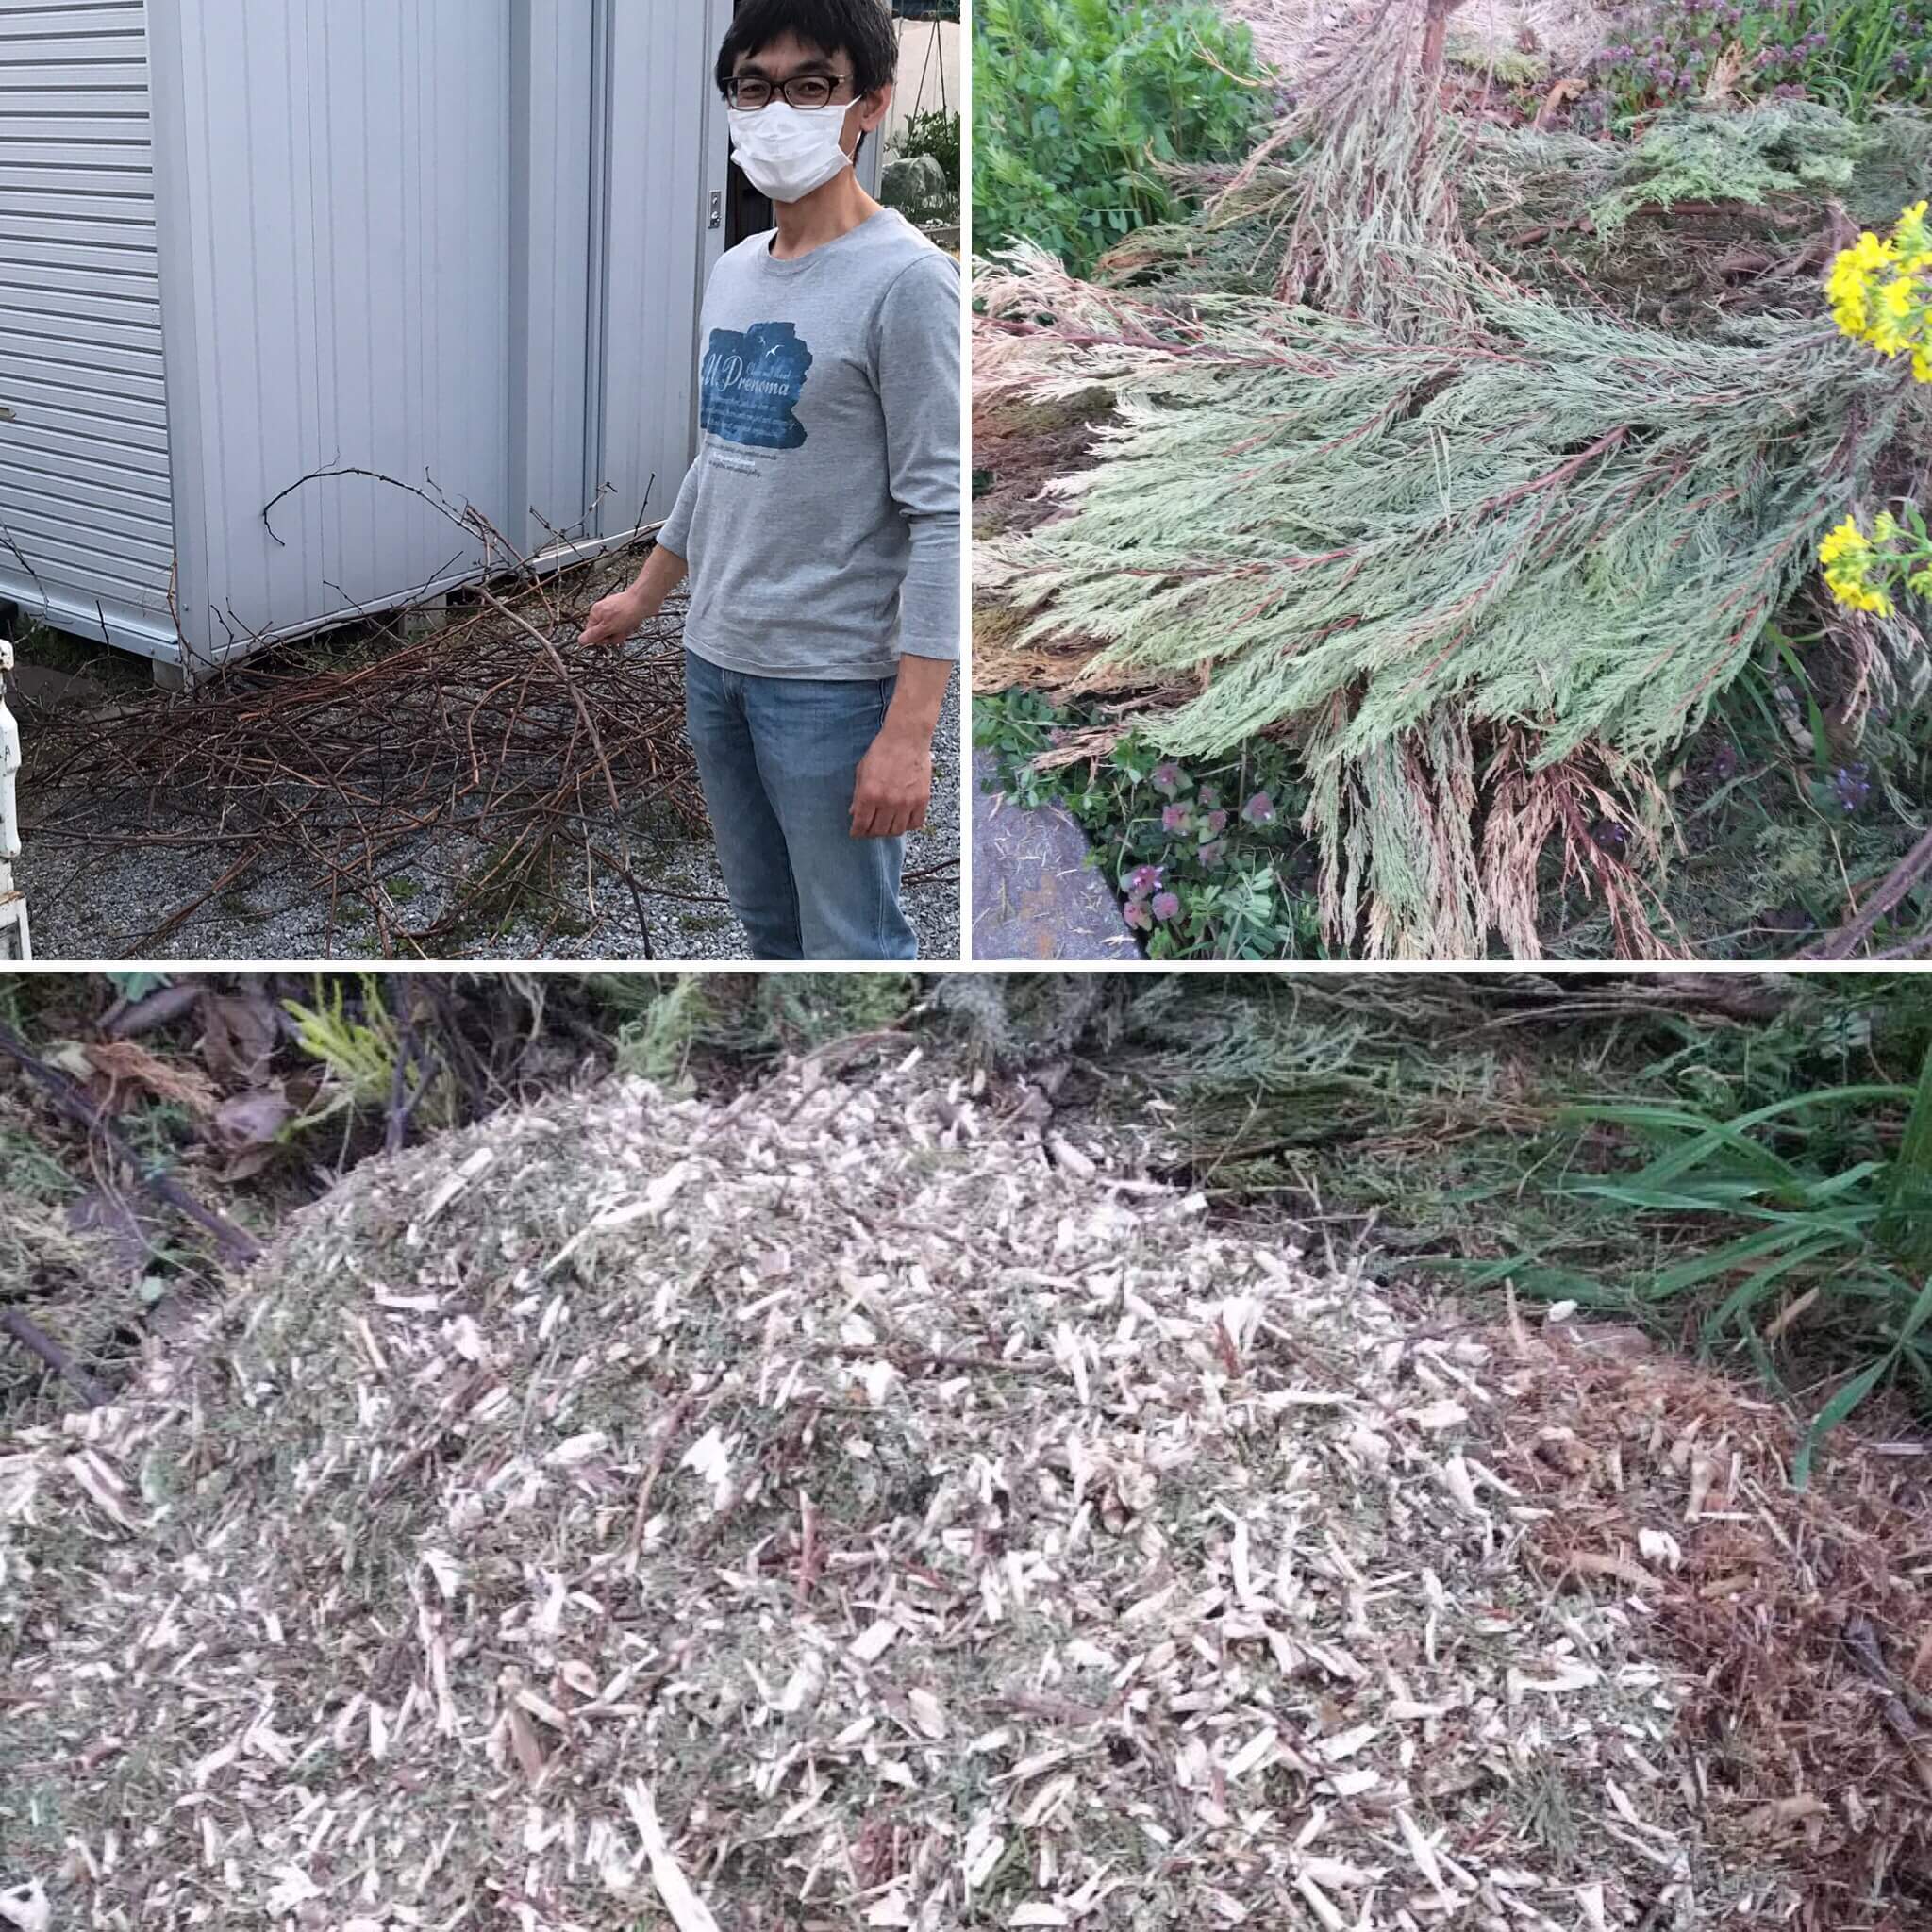 4か月でここまでウッドチップの堆肥化が進みました 特定非営利活動法人グリーンリサイクル埼玉